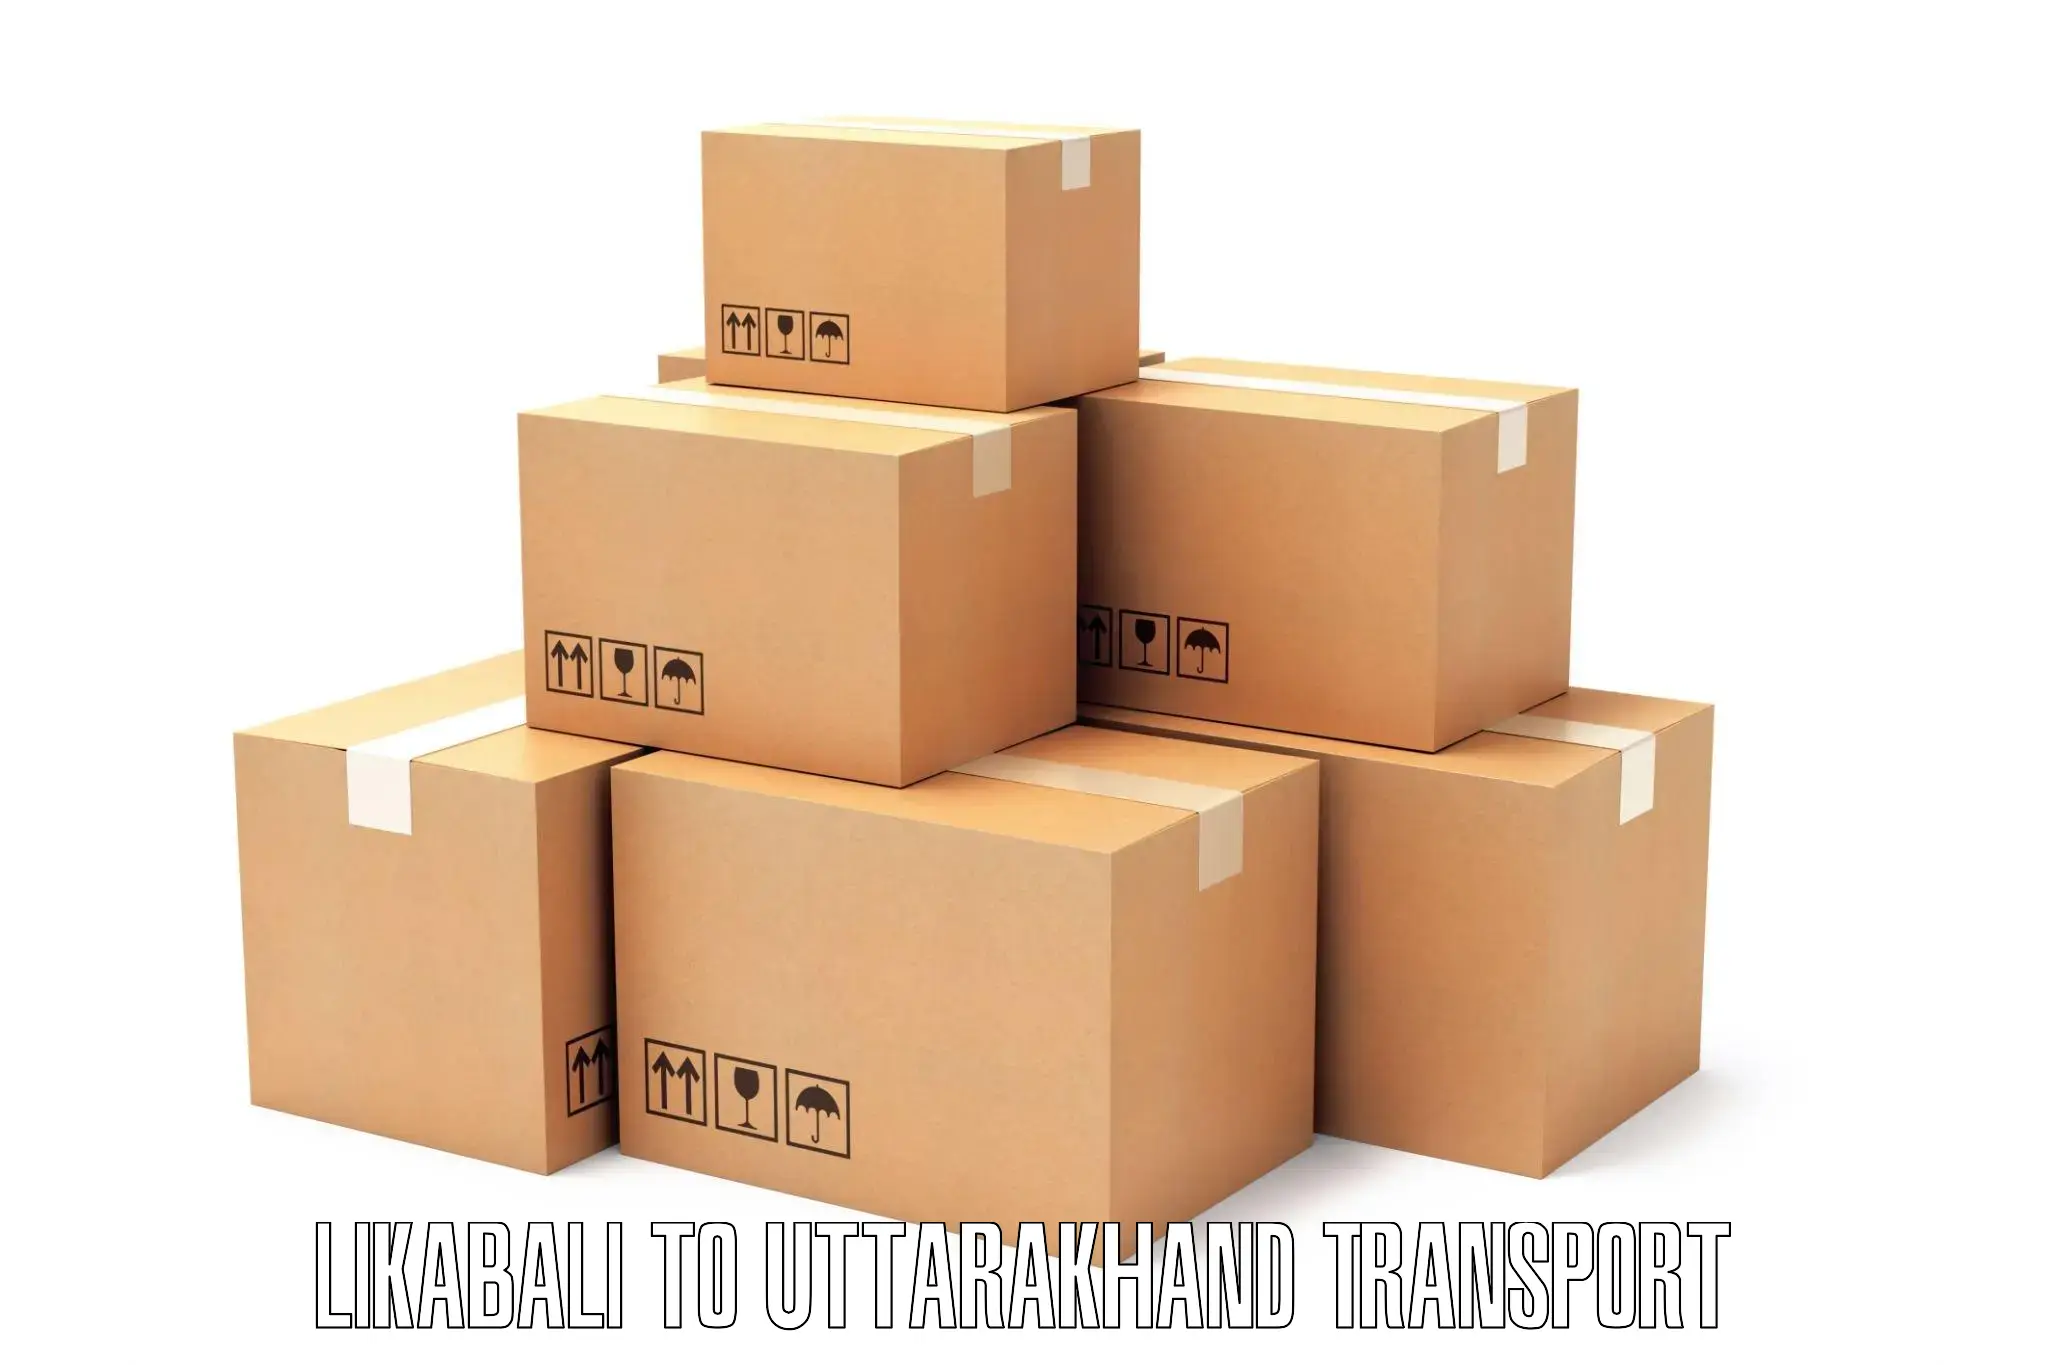 Two wheeler parcel service Likabali to Lansdowne